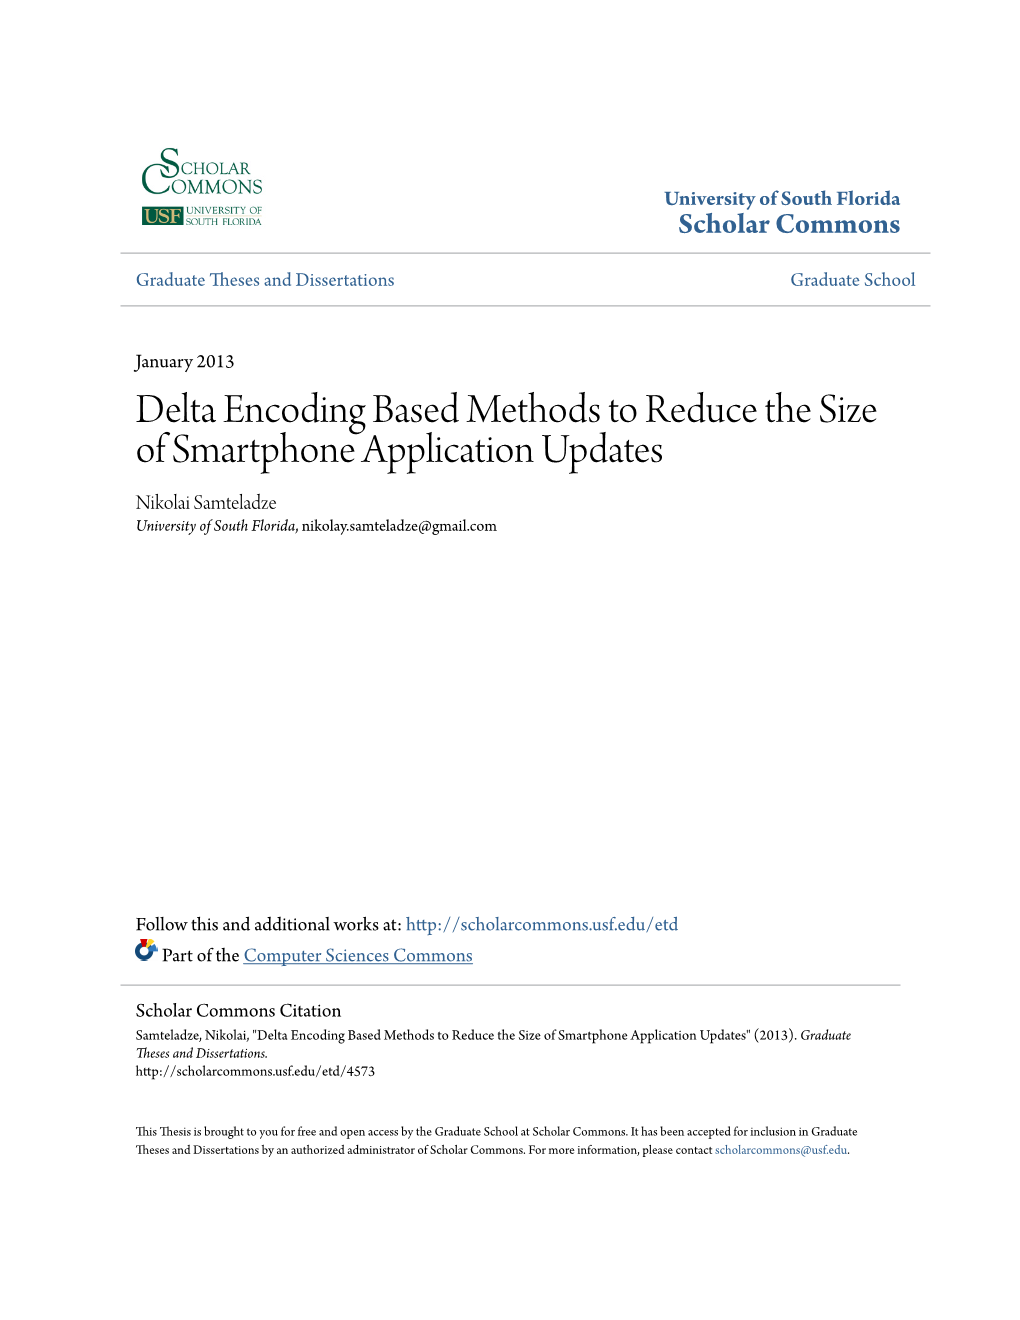 Delta Encoding Based Methods to Reduce the Size of Smartphone Application Updates Nikolai Samteladze University of South Florida, Nikolay.Samteladze@Gmail.Com